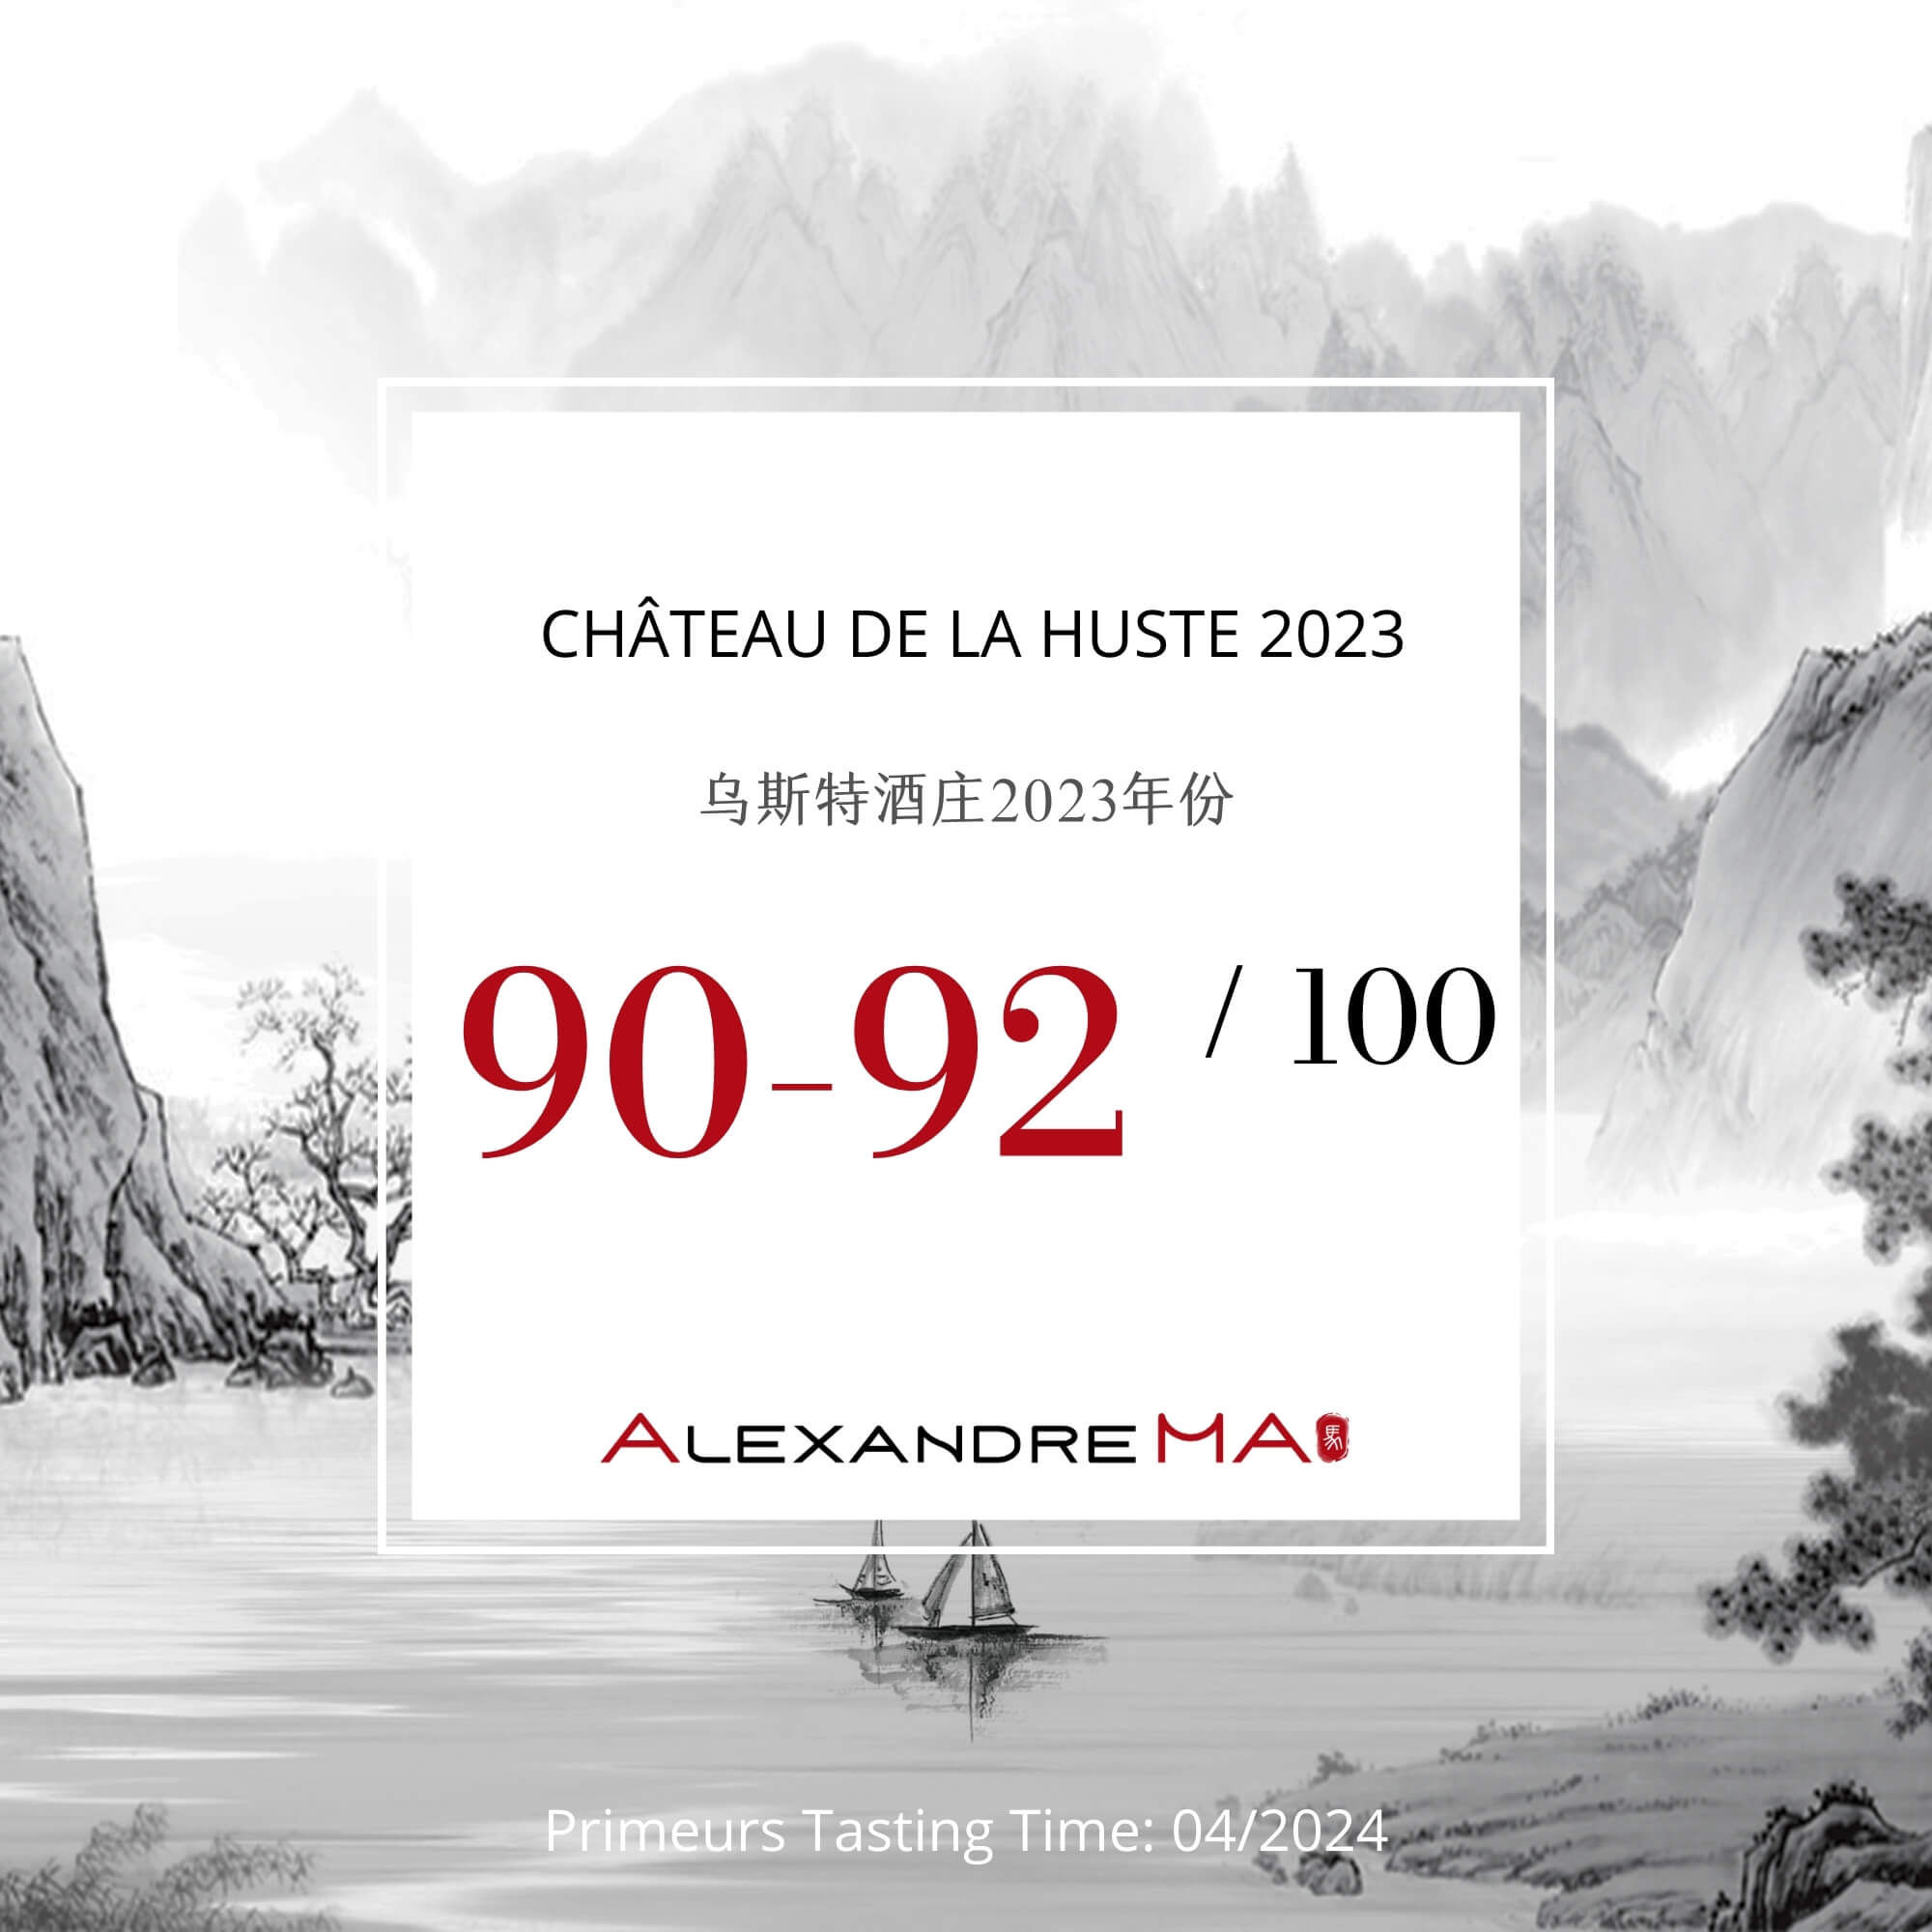 Château de La Huste 2023 Primeurs 乌斯特酒庄 - Alexandre Ma